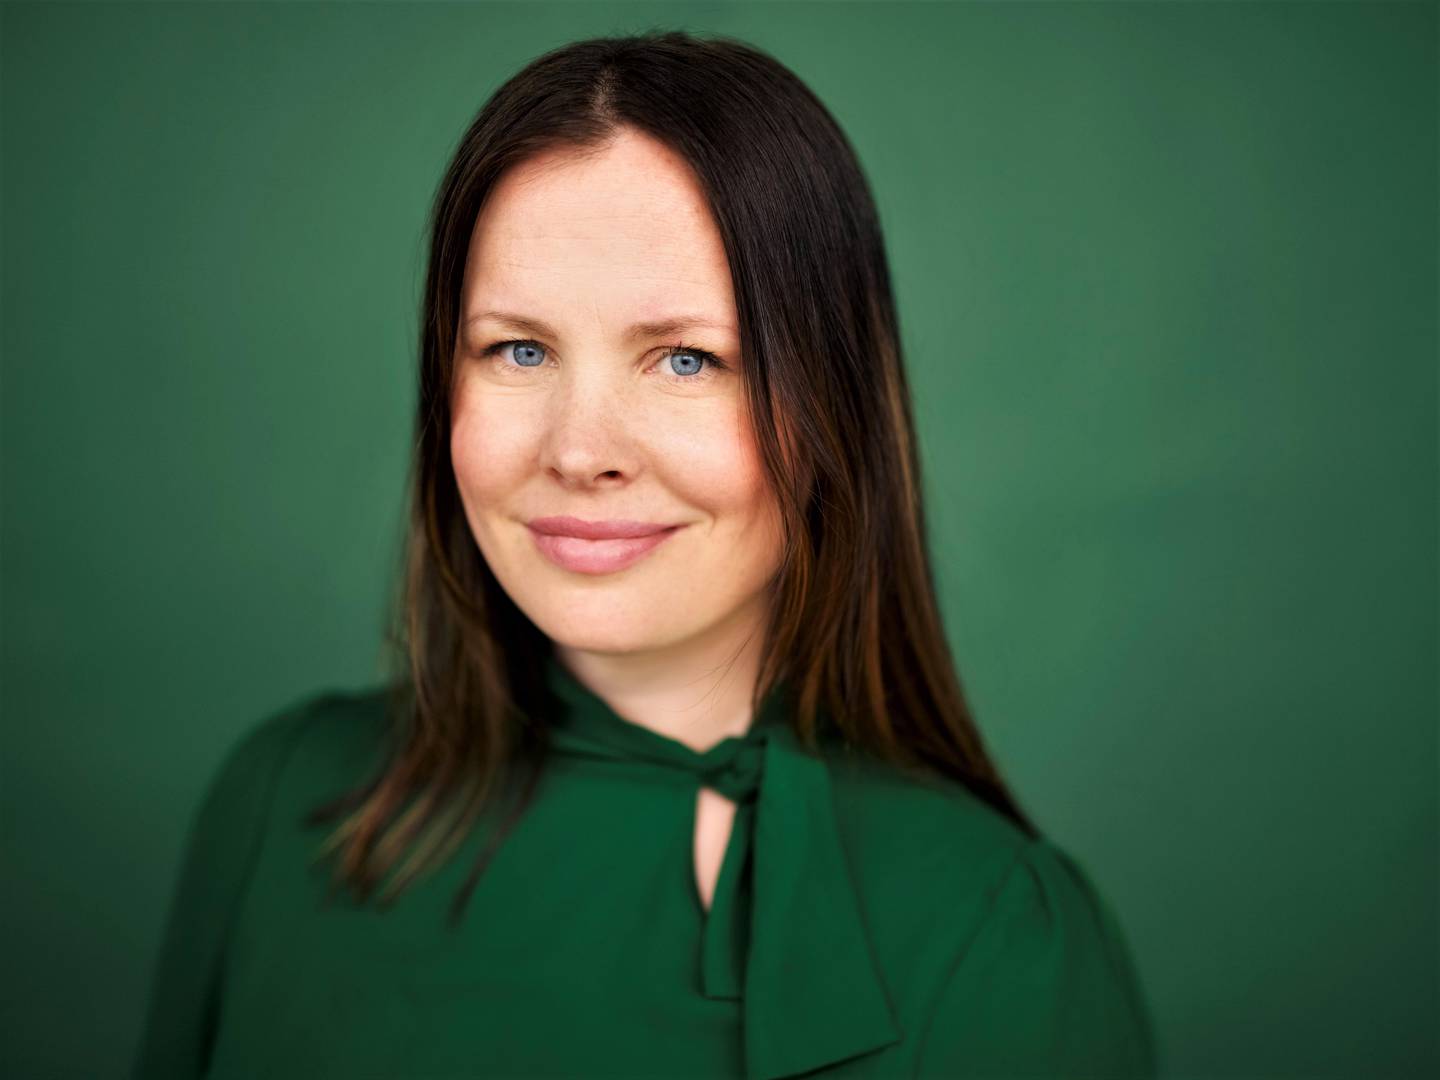 Cathrin Janøy valgte MDG - og blir der. Hun mener hun kan bidra med mer i et eksisterende parti - enn i et parti som må bygges opp helt fra bunnen av.